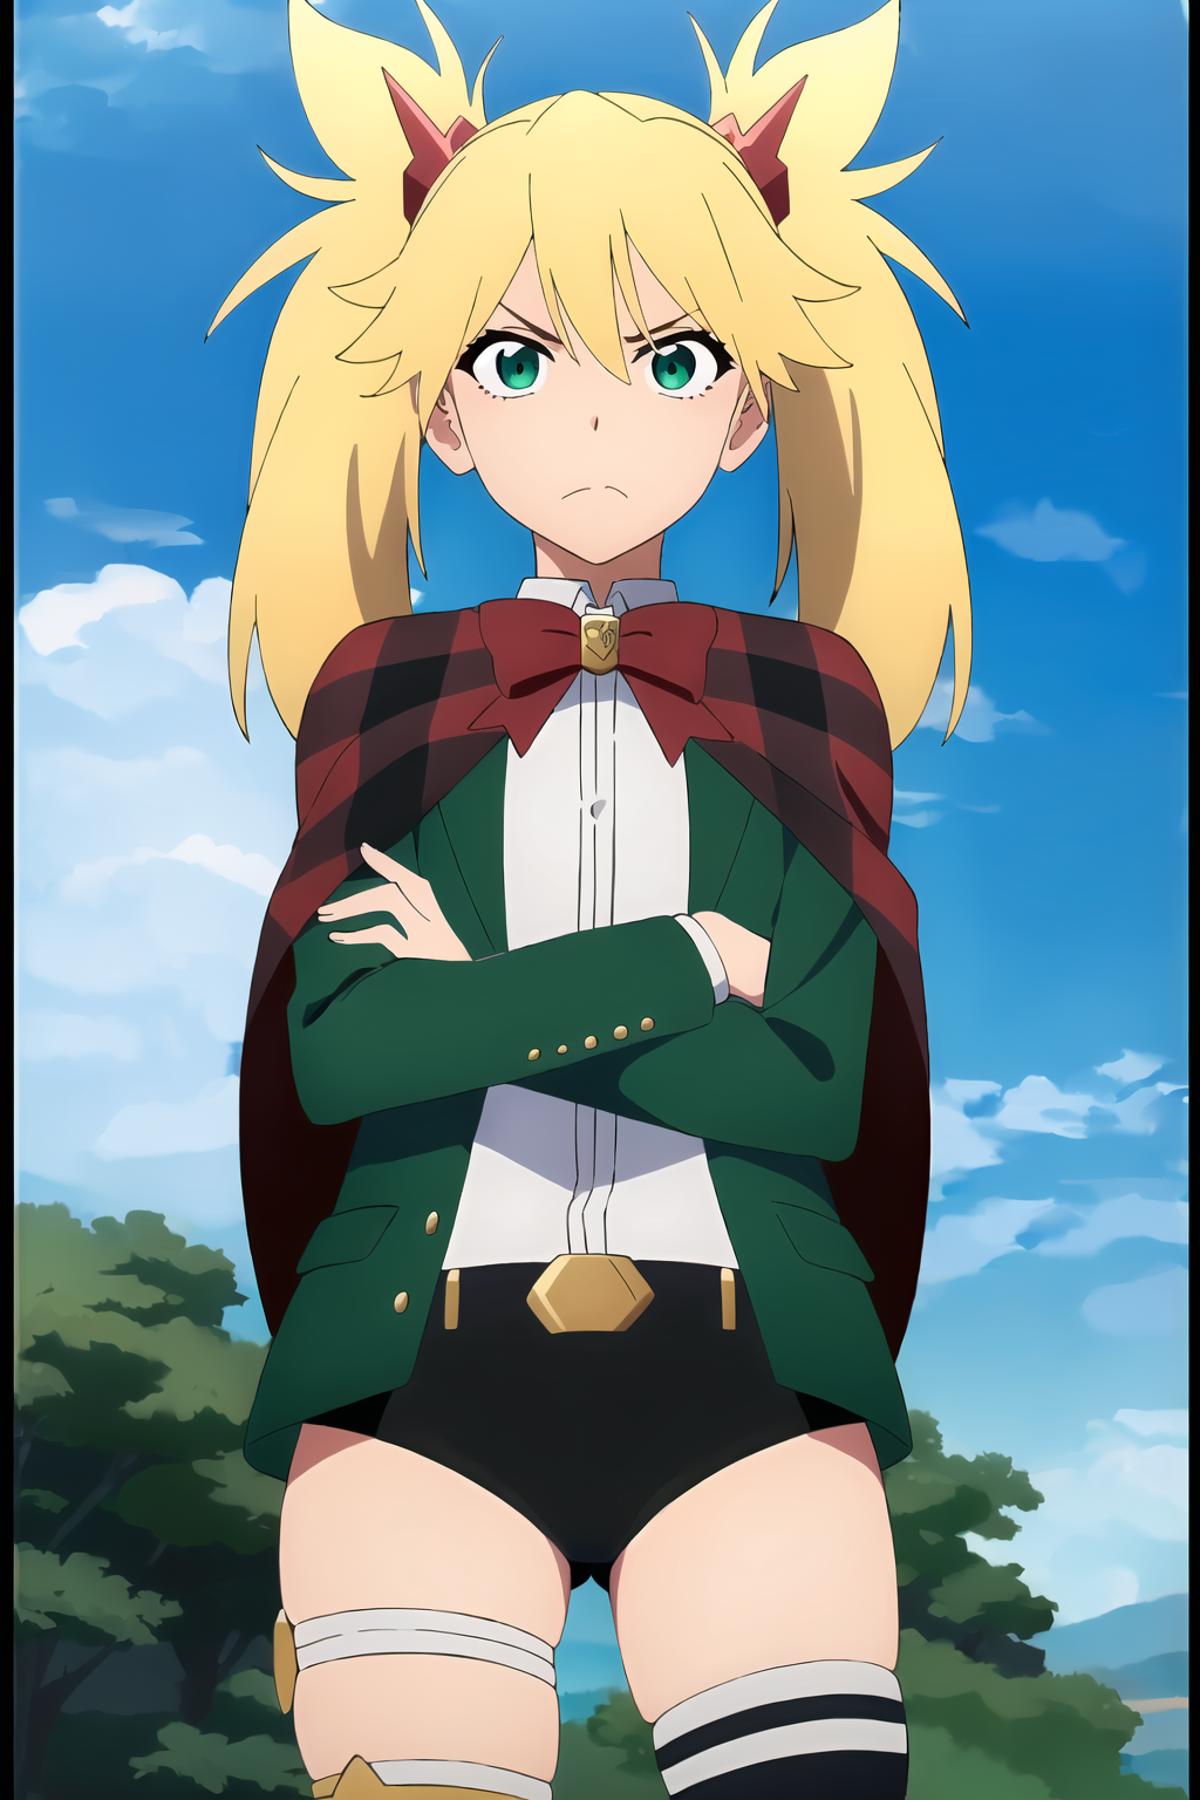 Anime Screencap Style image by Vaporvvave